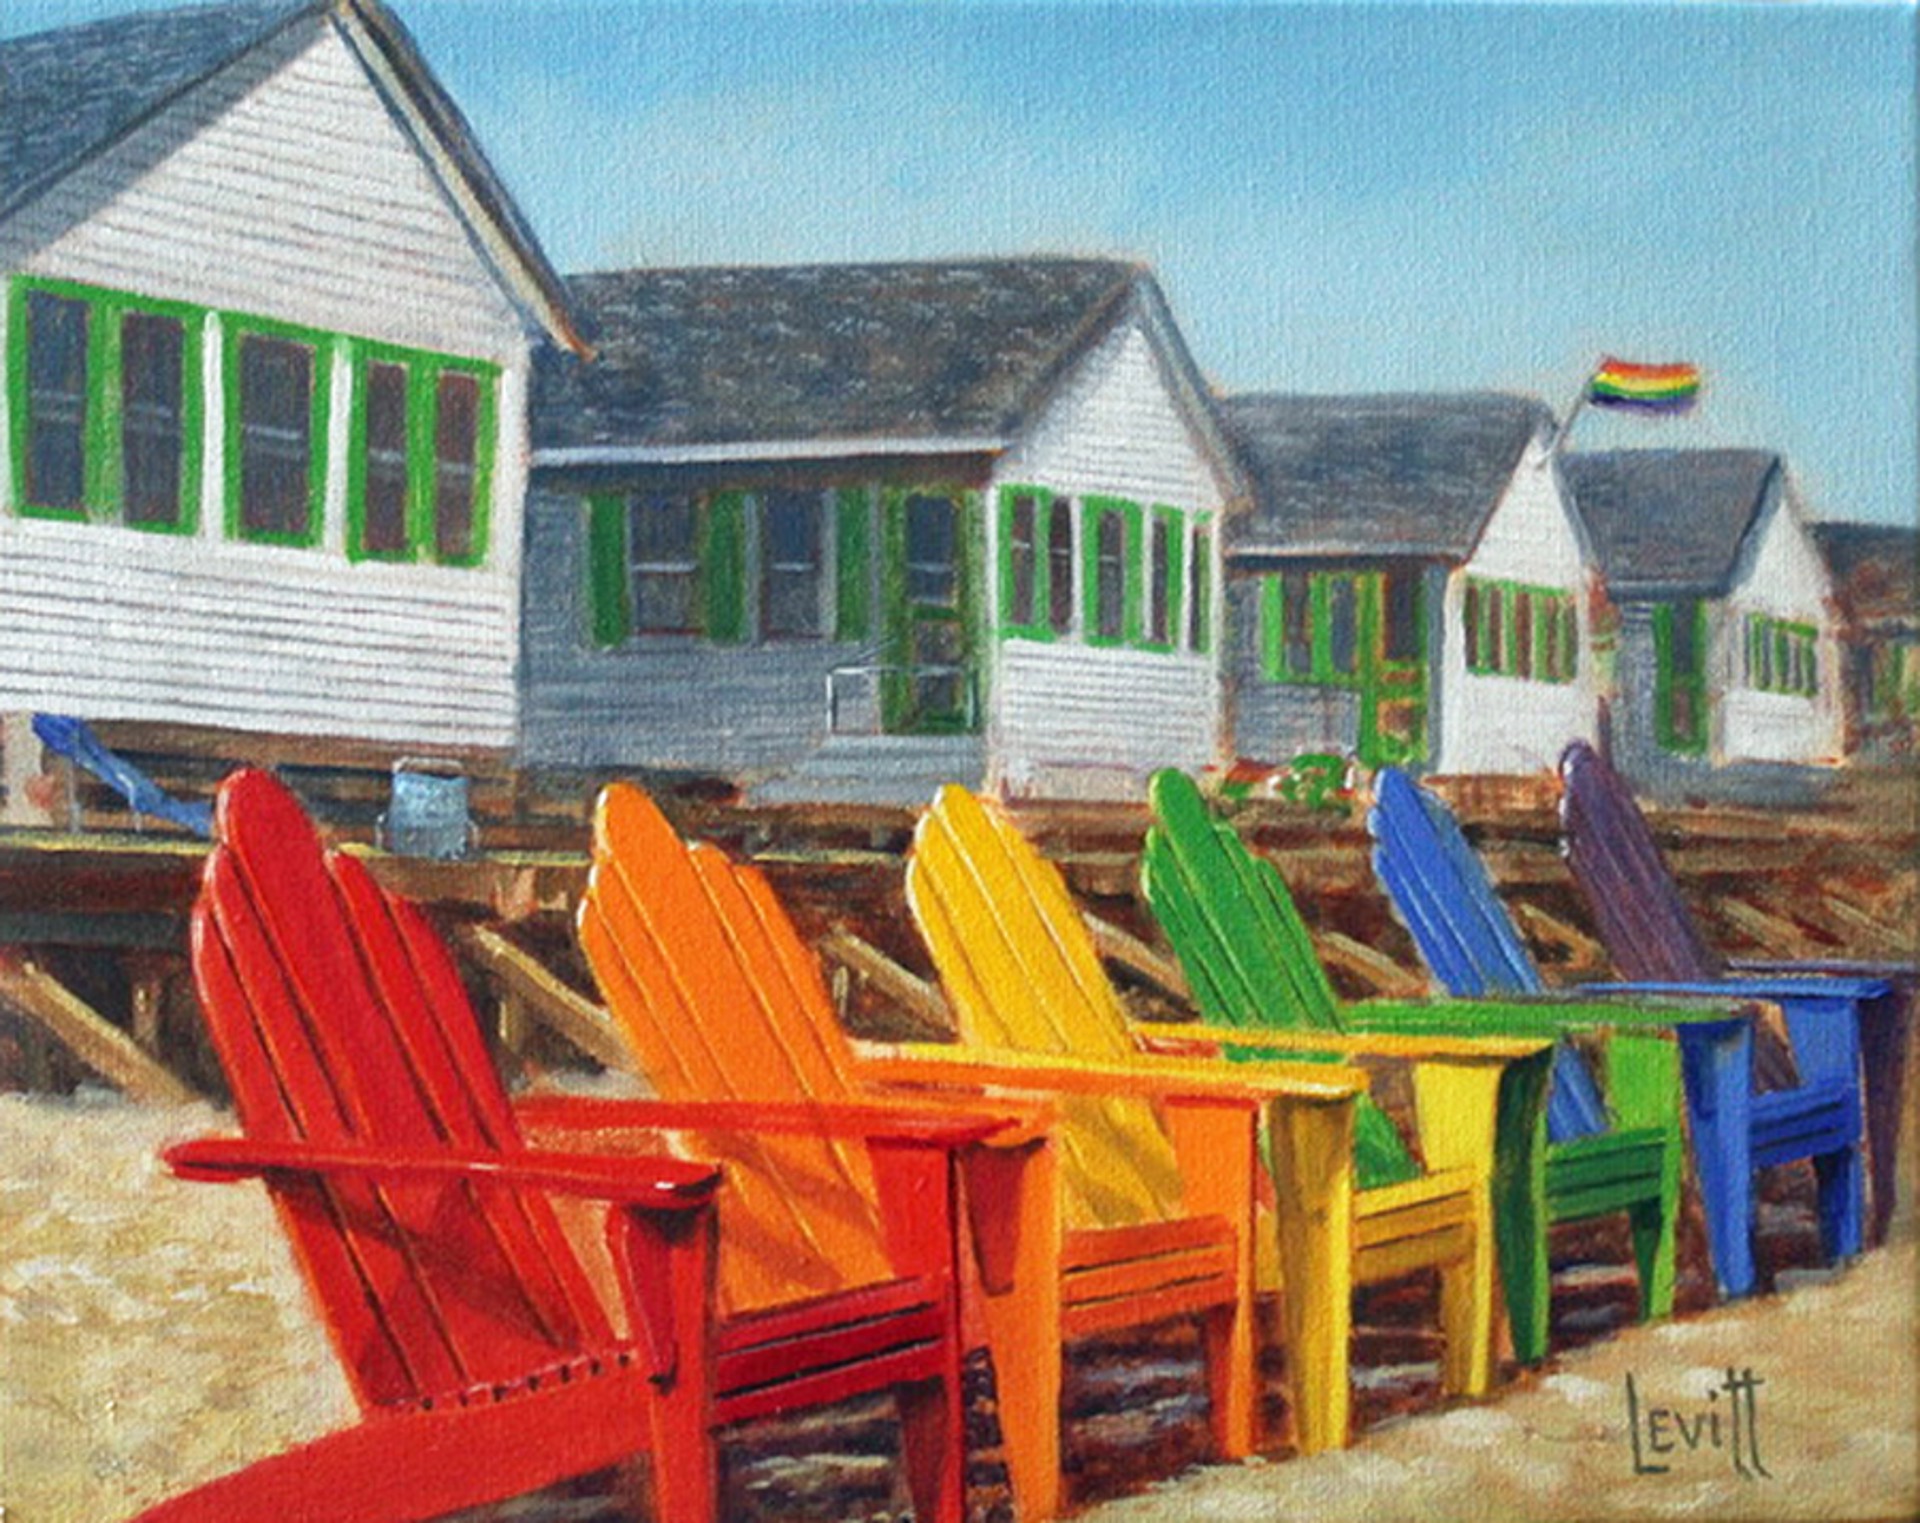 Beachside Pride by Barney Levitt